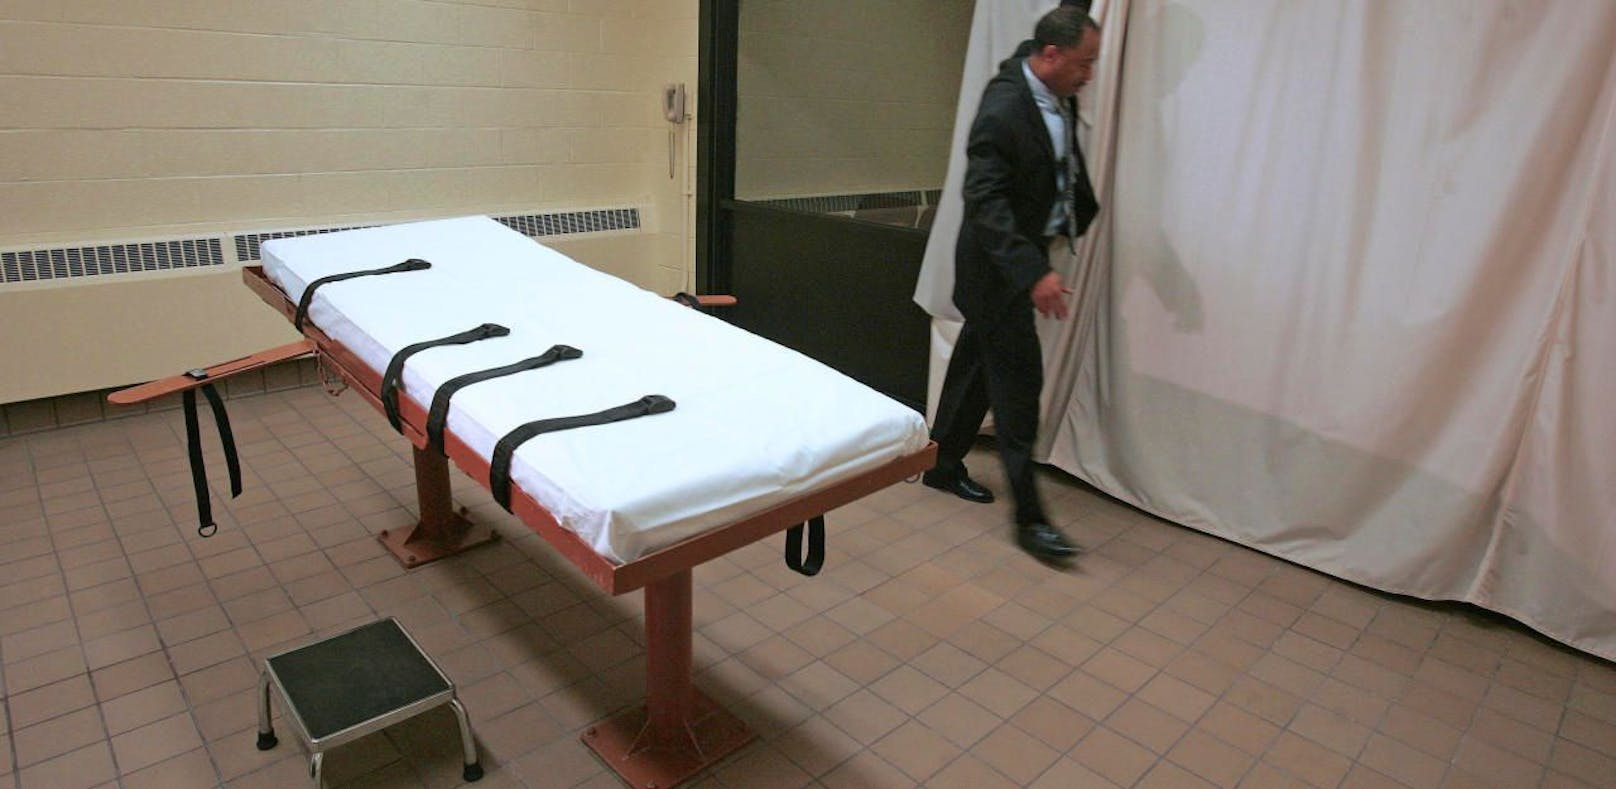 Der Hinrichtungsraum im Gefängnis von Lucasville in Ohio.